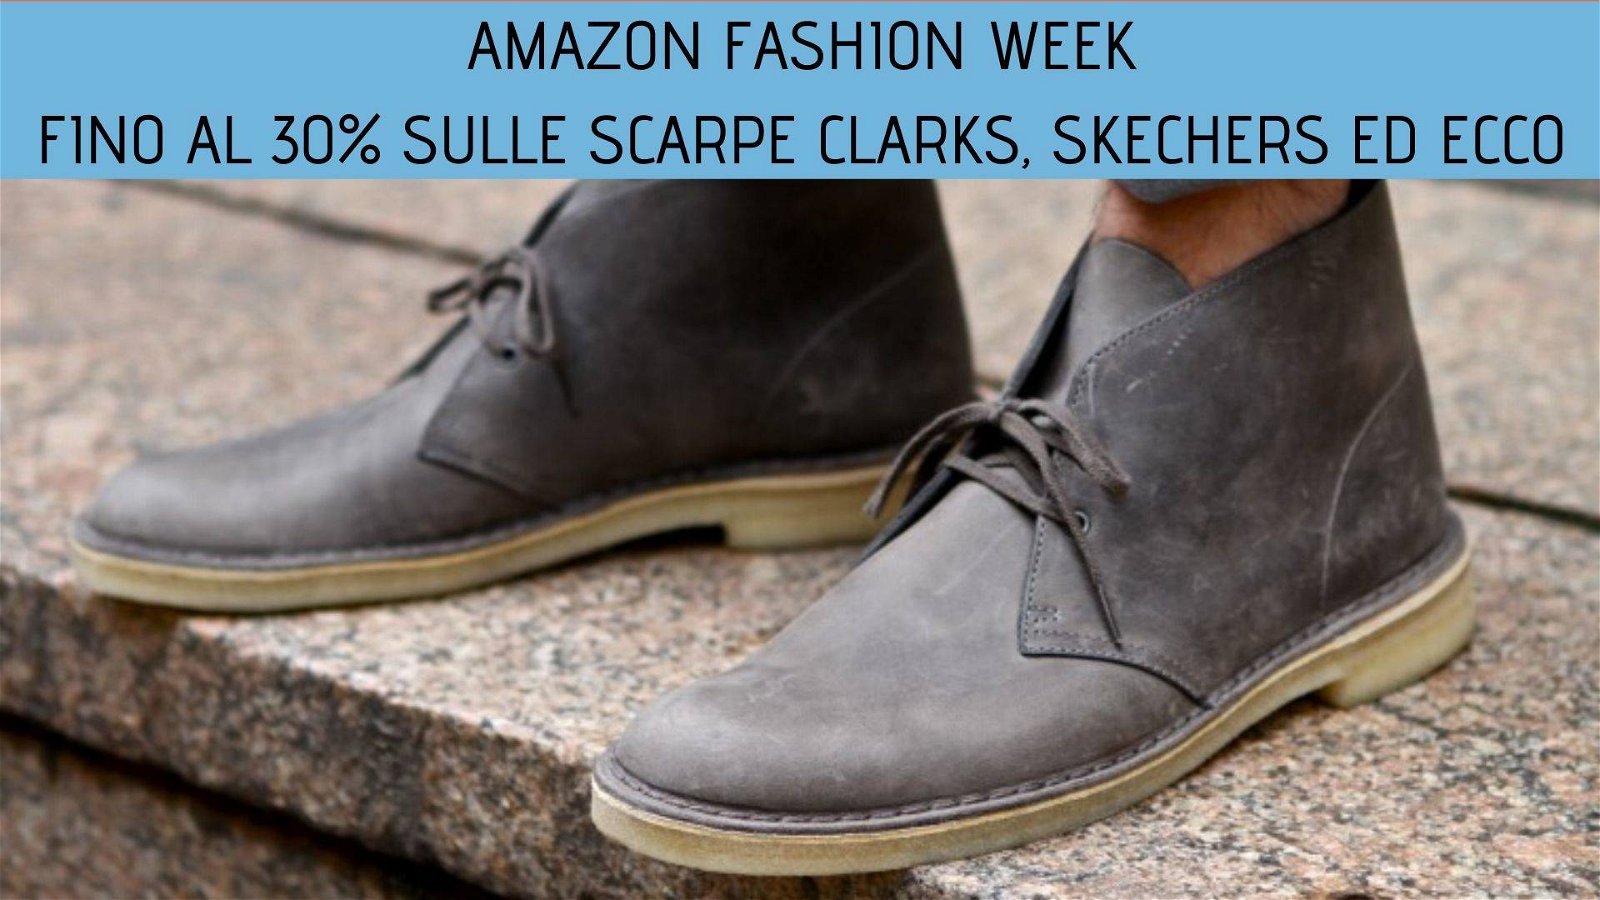 Immagine di Fino al 30% sulle scarpe Clarks, Skechers e Ecco per la Amazon Fashion Week